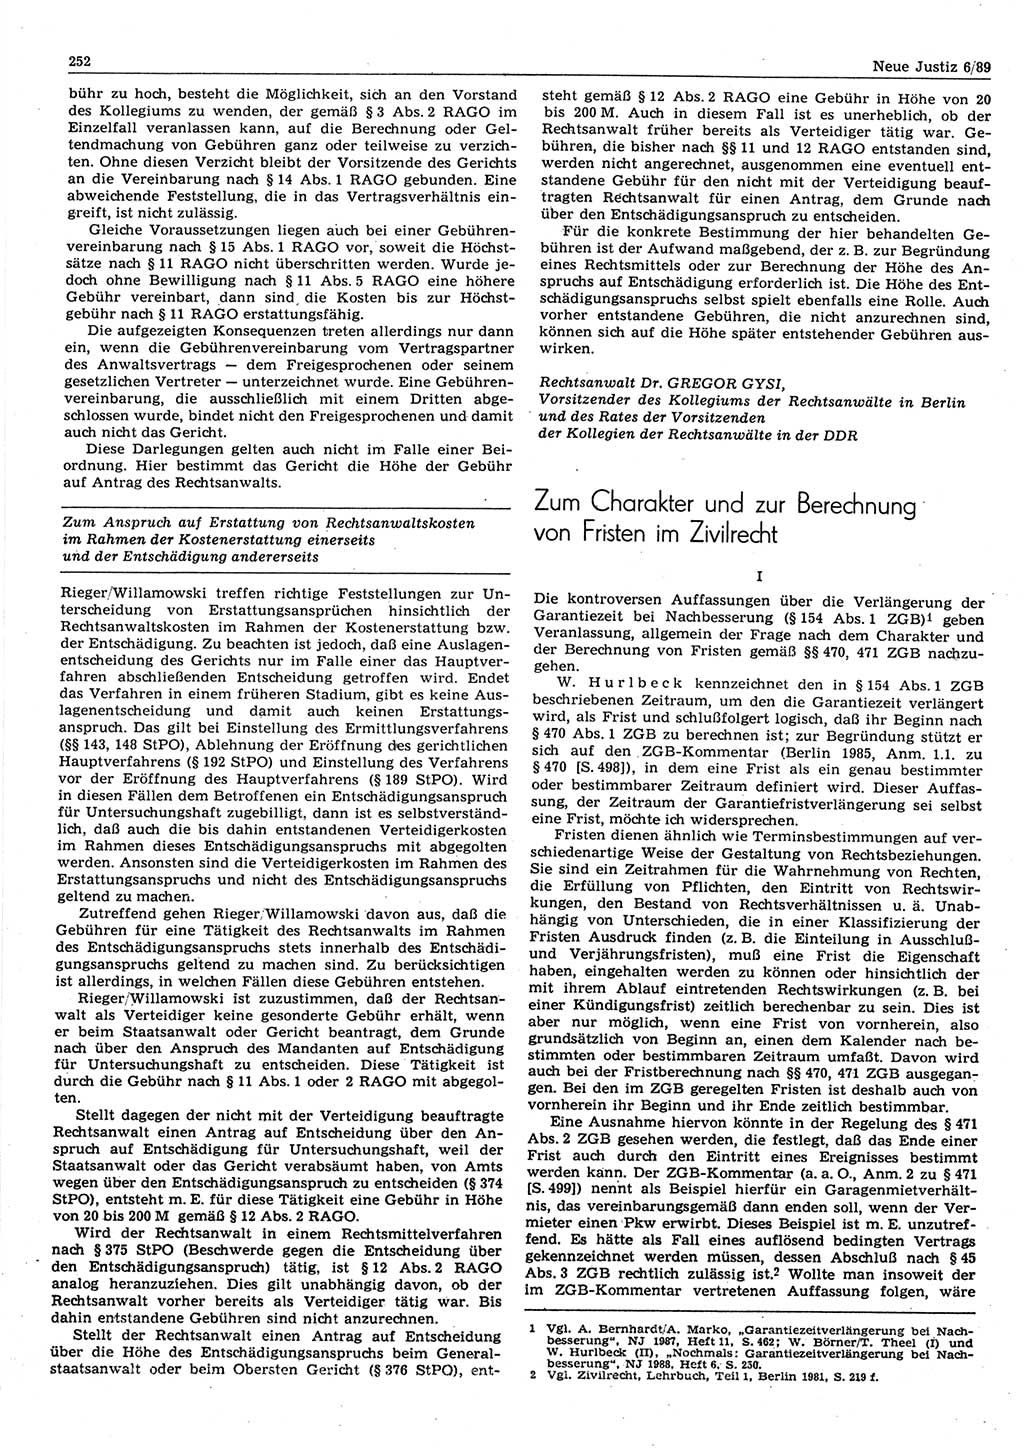 Neue Justiz (NJ), Zeitschrift für sozialistisches Recht und Gesetzlichkeit [Deutsche Demokratische Republik (DDR)], 43. Jahrgang 1989, Seite 252 (NJ DDR 1989, S. 252)